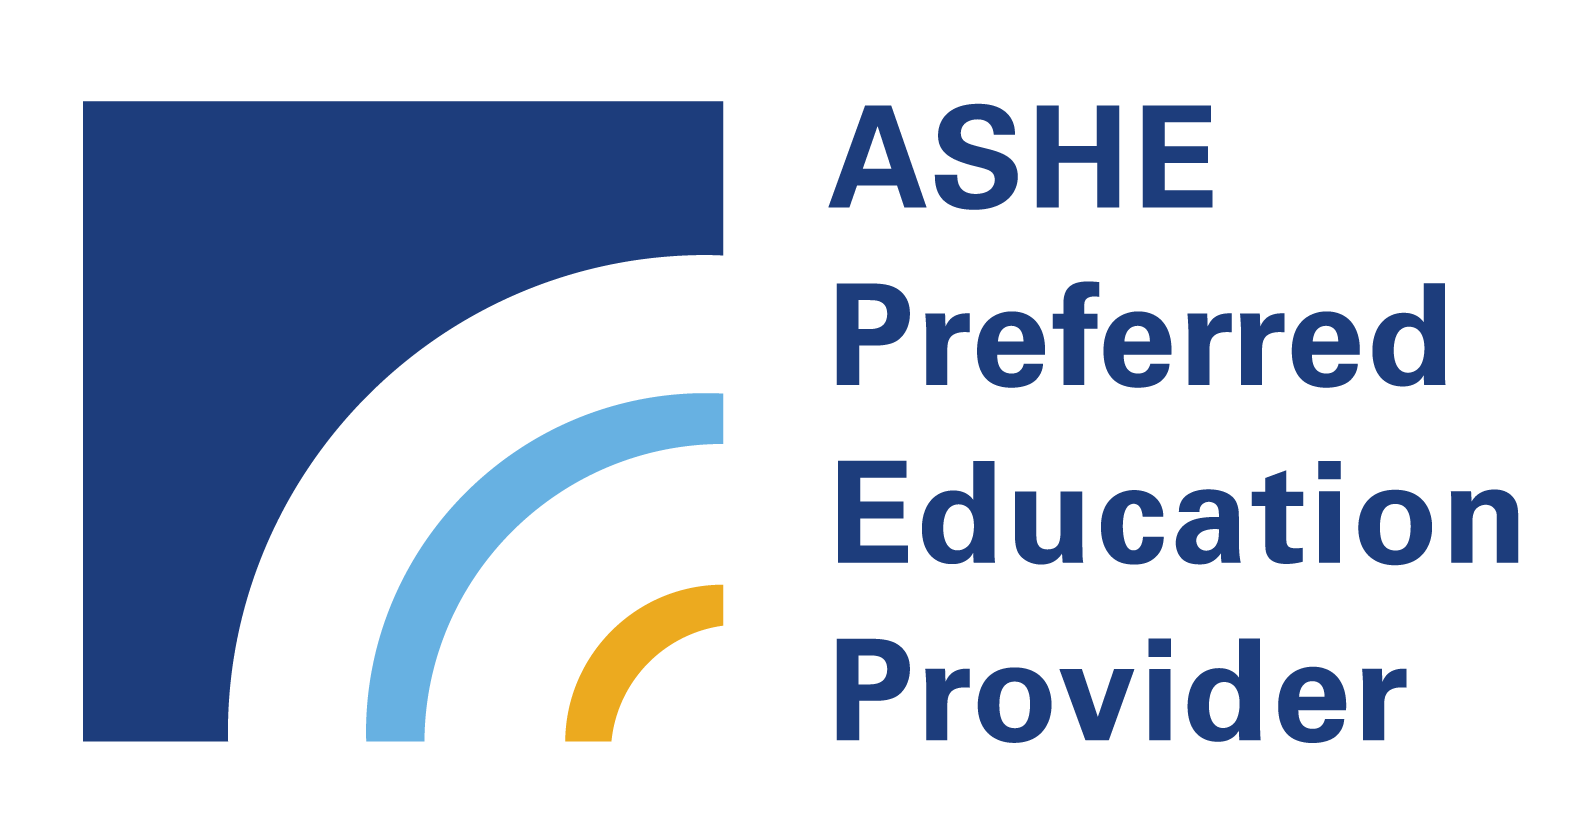 ASHE Preferred Education Provider